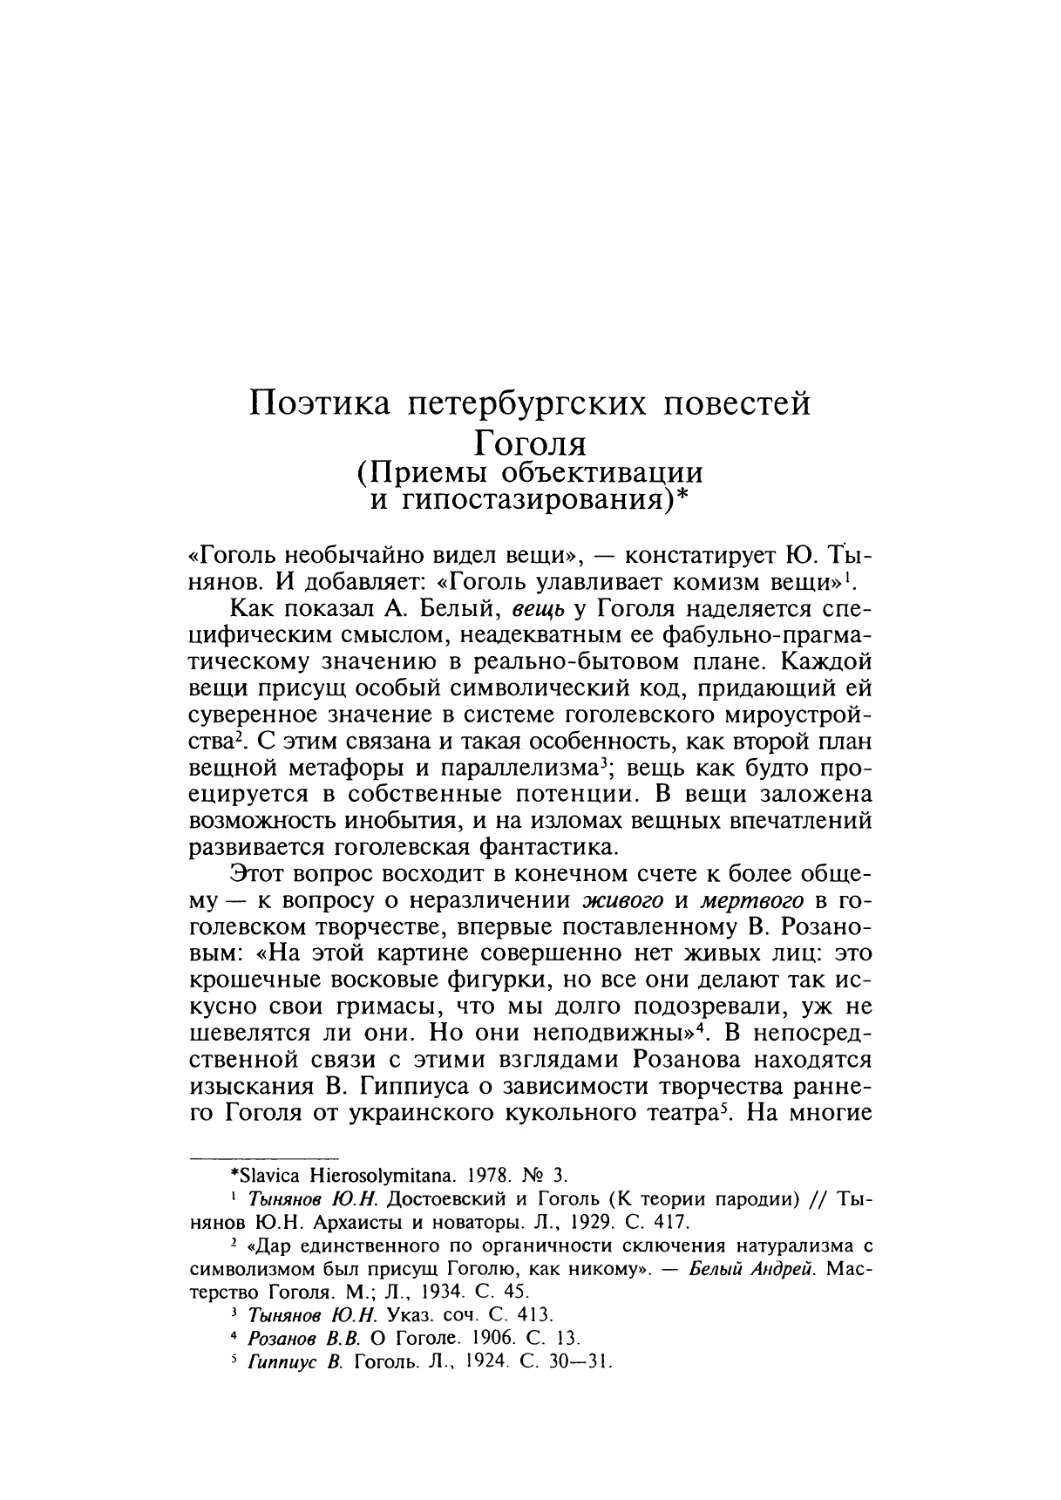 Поэтика петербургских повестей Гоголя (Приемы объективации и гипостазирования